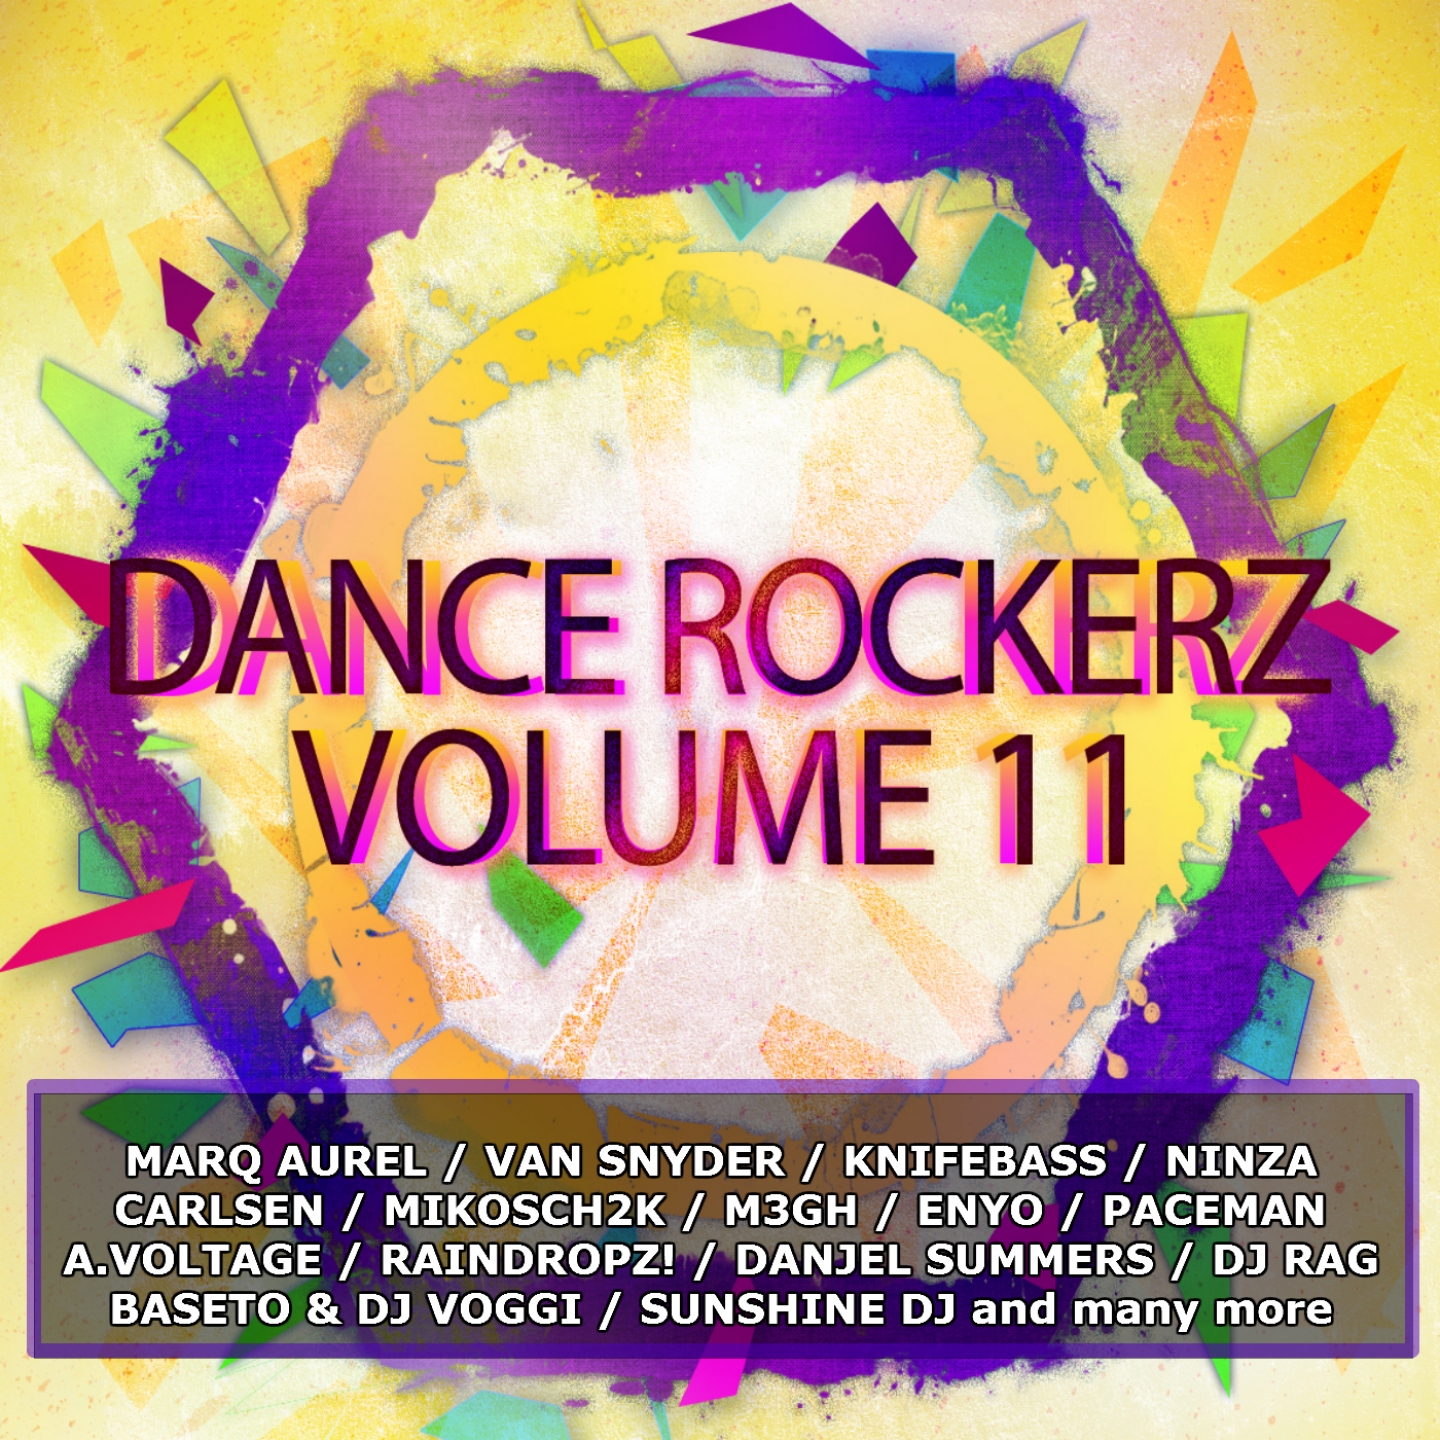 Dance Rockerz Volume 11